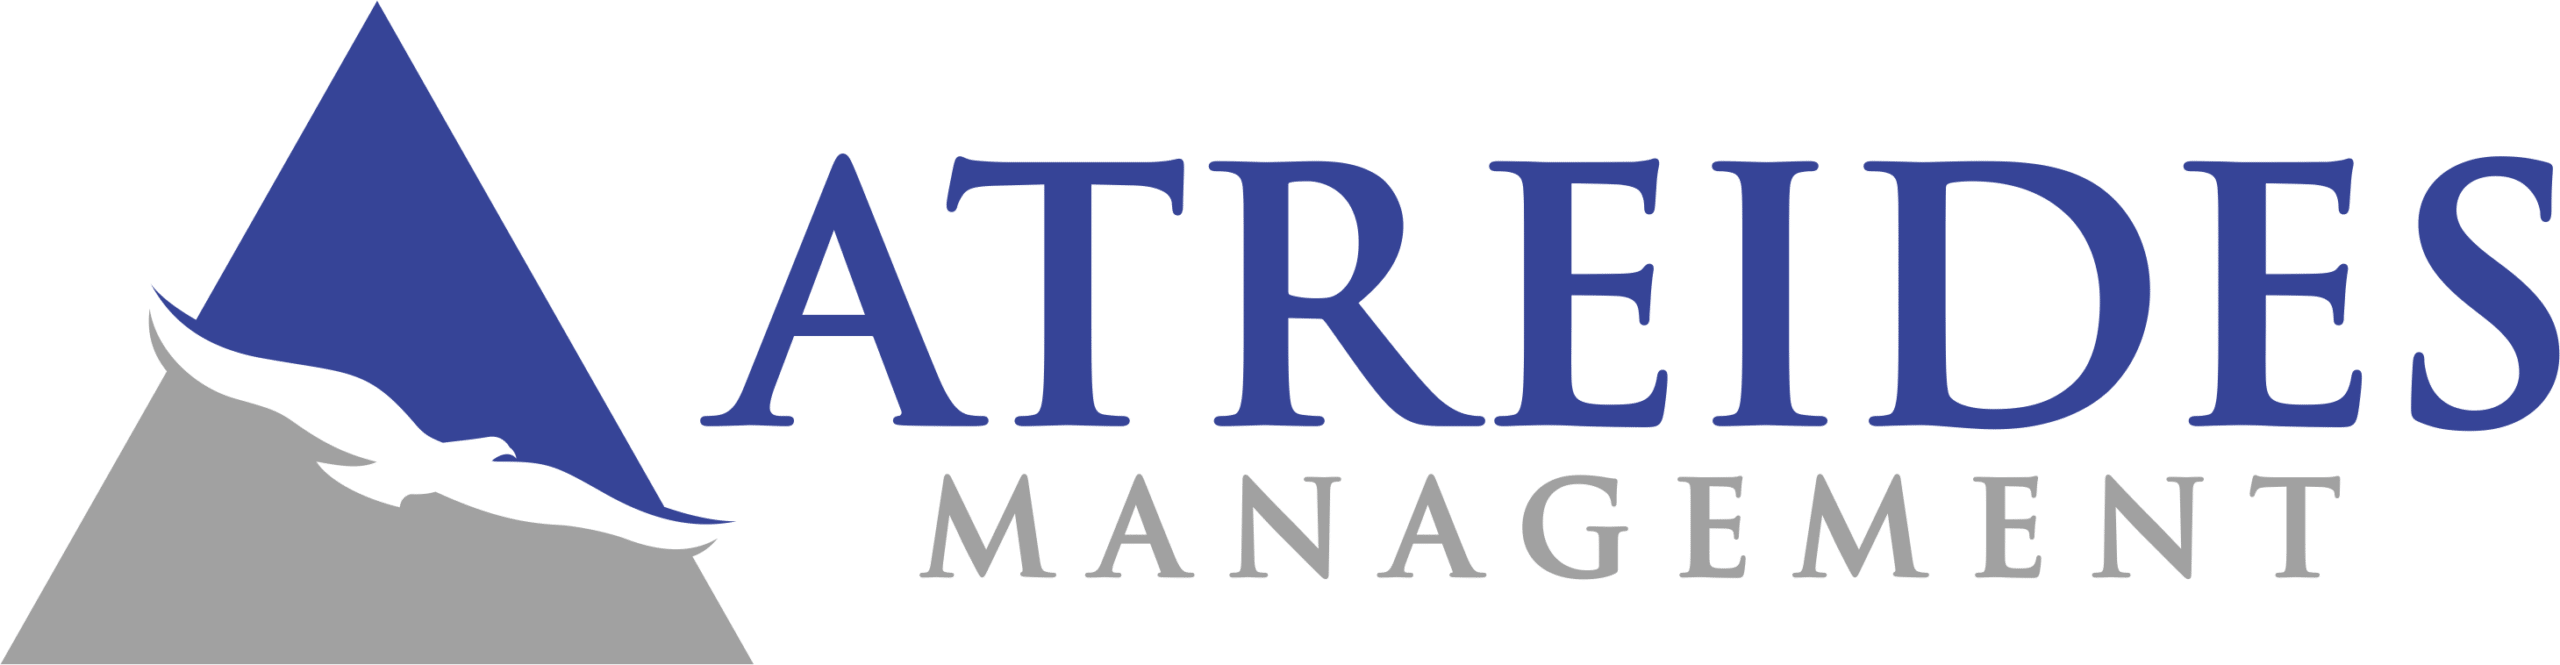 Atreides Management Logo